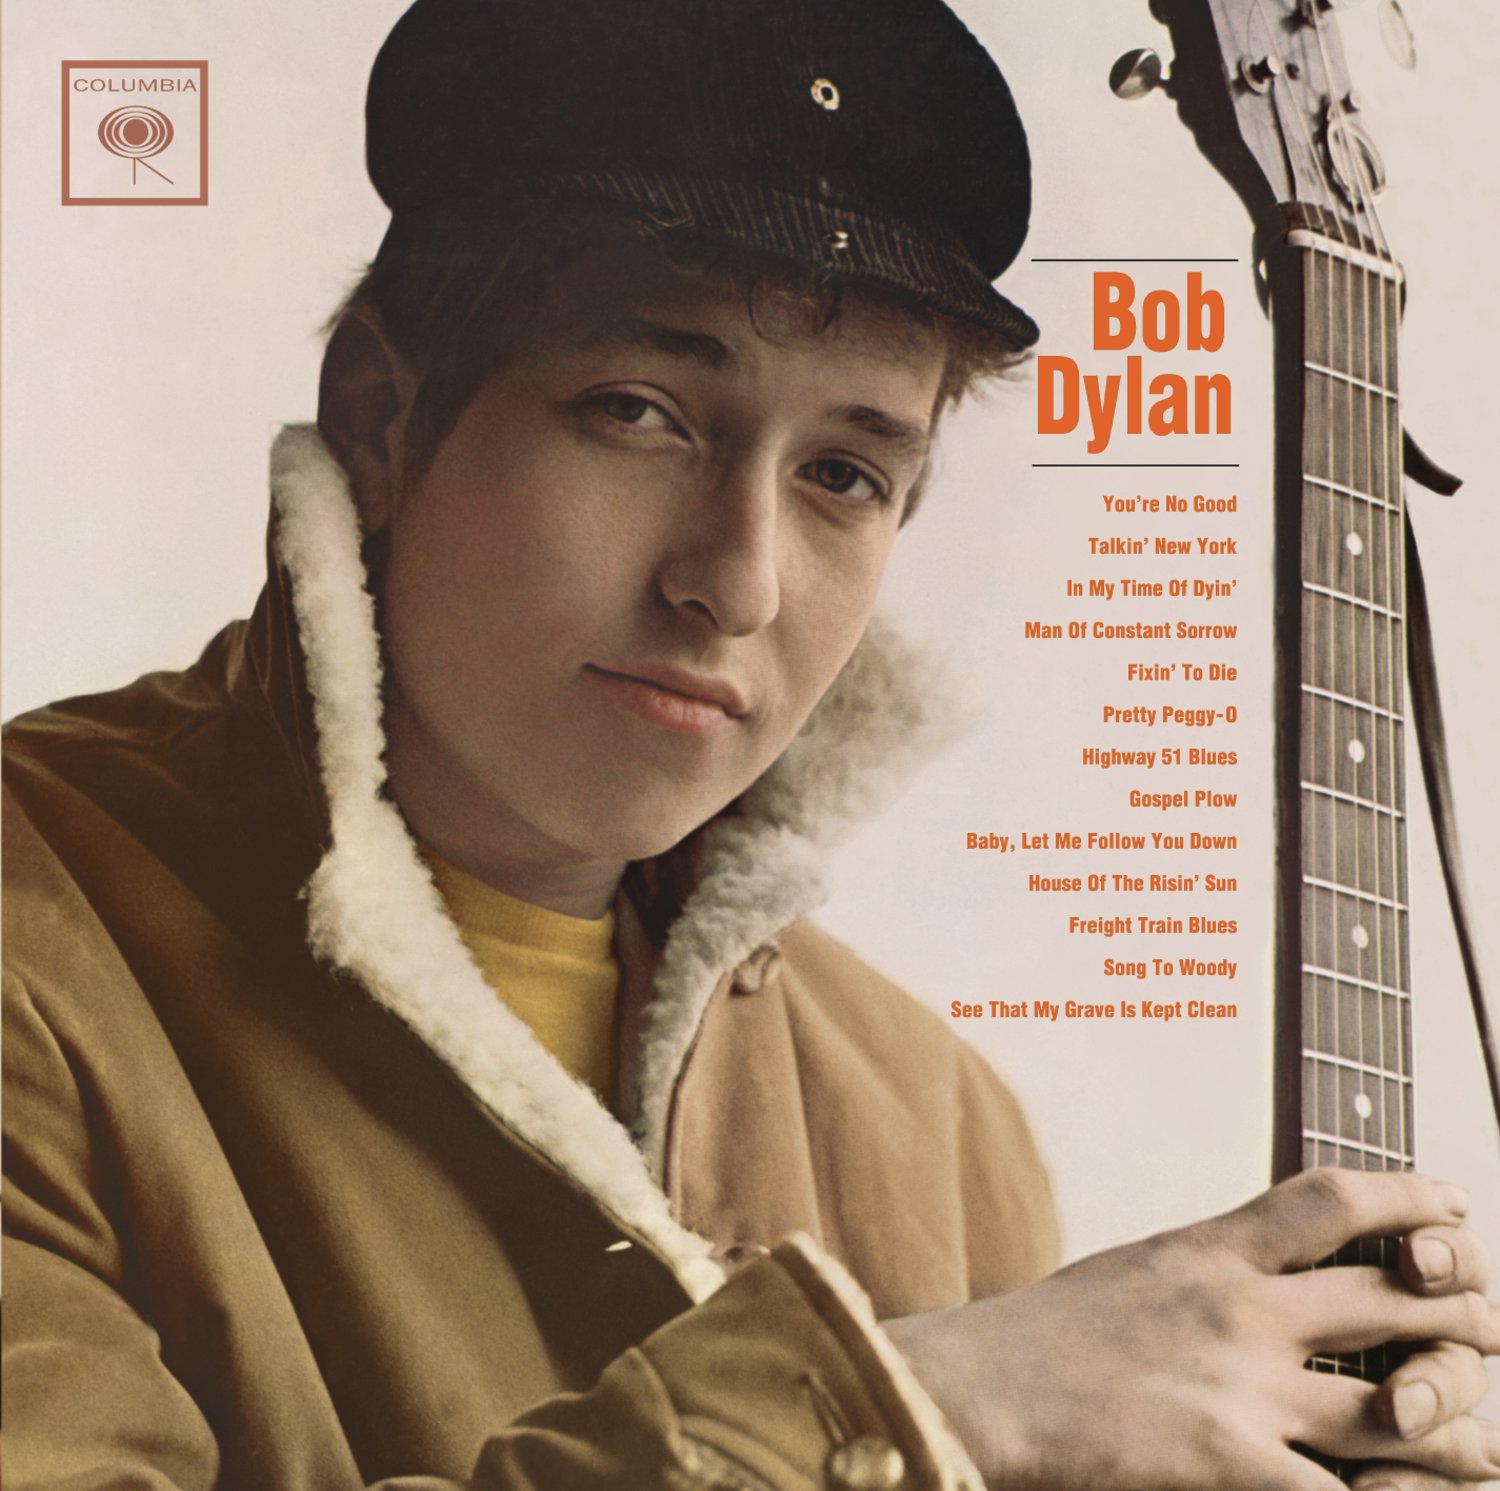 El álbum "Bob Dylan" fue editado el 19 de marzo de 1962